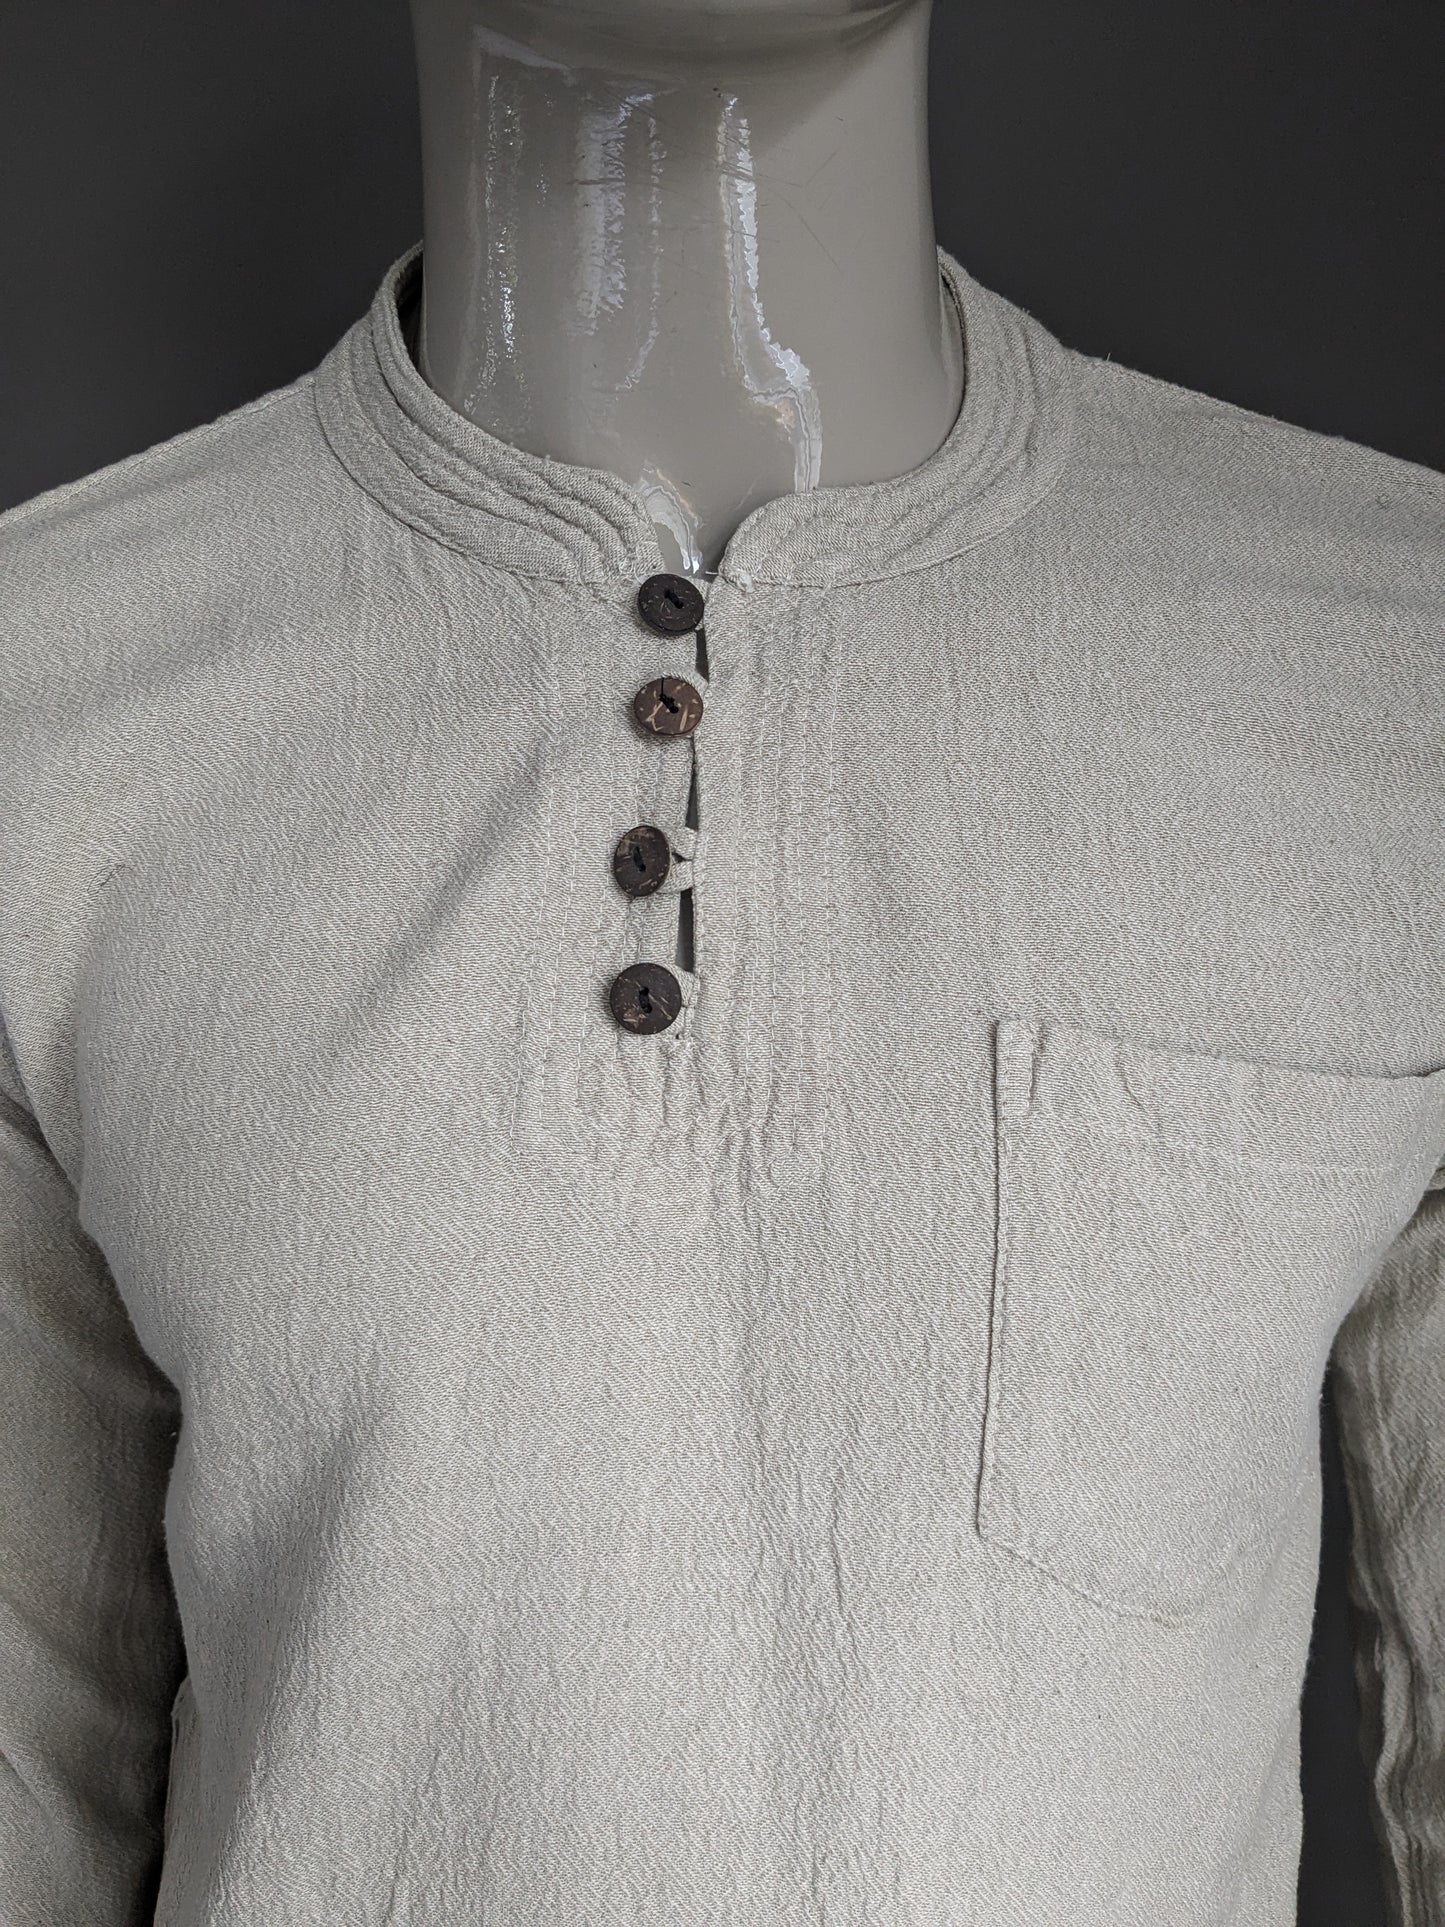 Vintage -Guru -Hemd mit MAO / Bauern und Hochkragen mit 1 Beutel. Beige Motiv. Größe M.